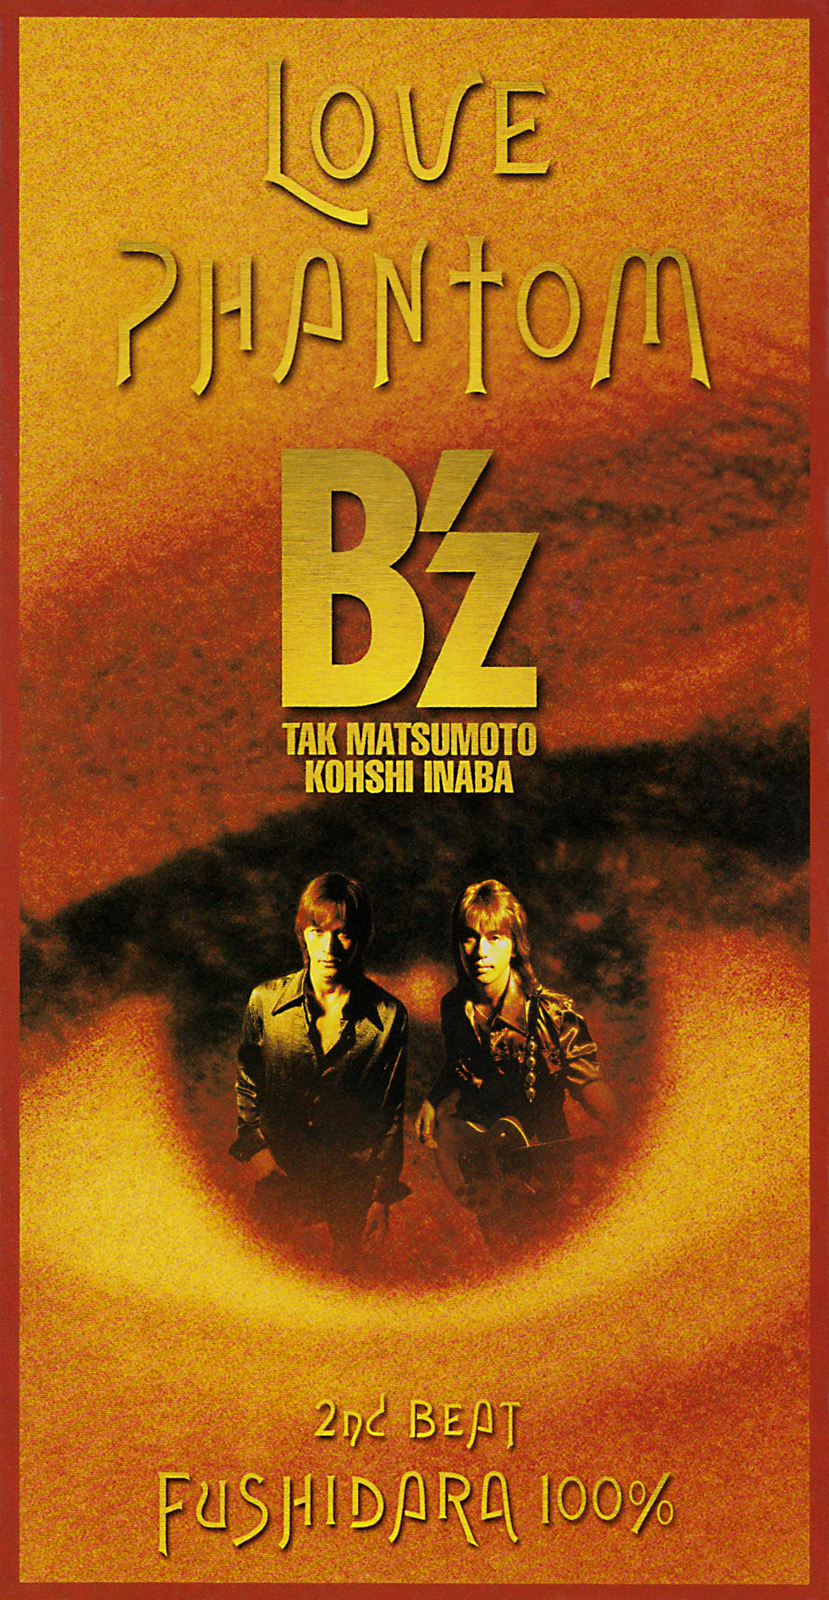 B'z (ビーズ) 18thシングル『LOVE PHANTOM (ラヴ・ファントム)』(1995年10月11日発売) 高画質ジャケット画像